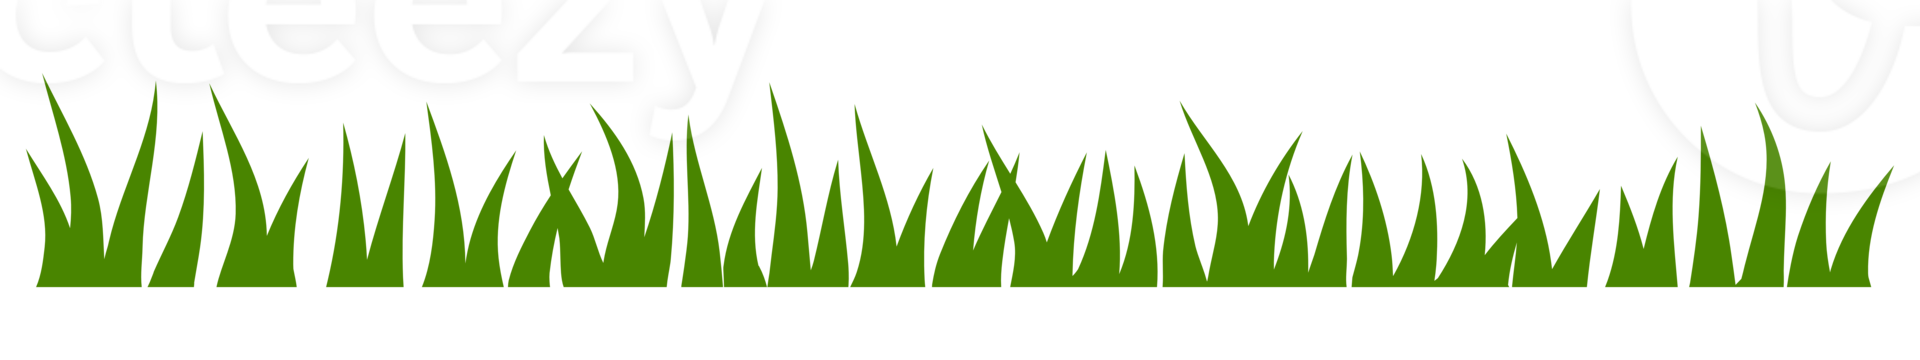 illustration av grön gräs png